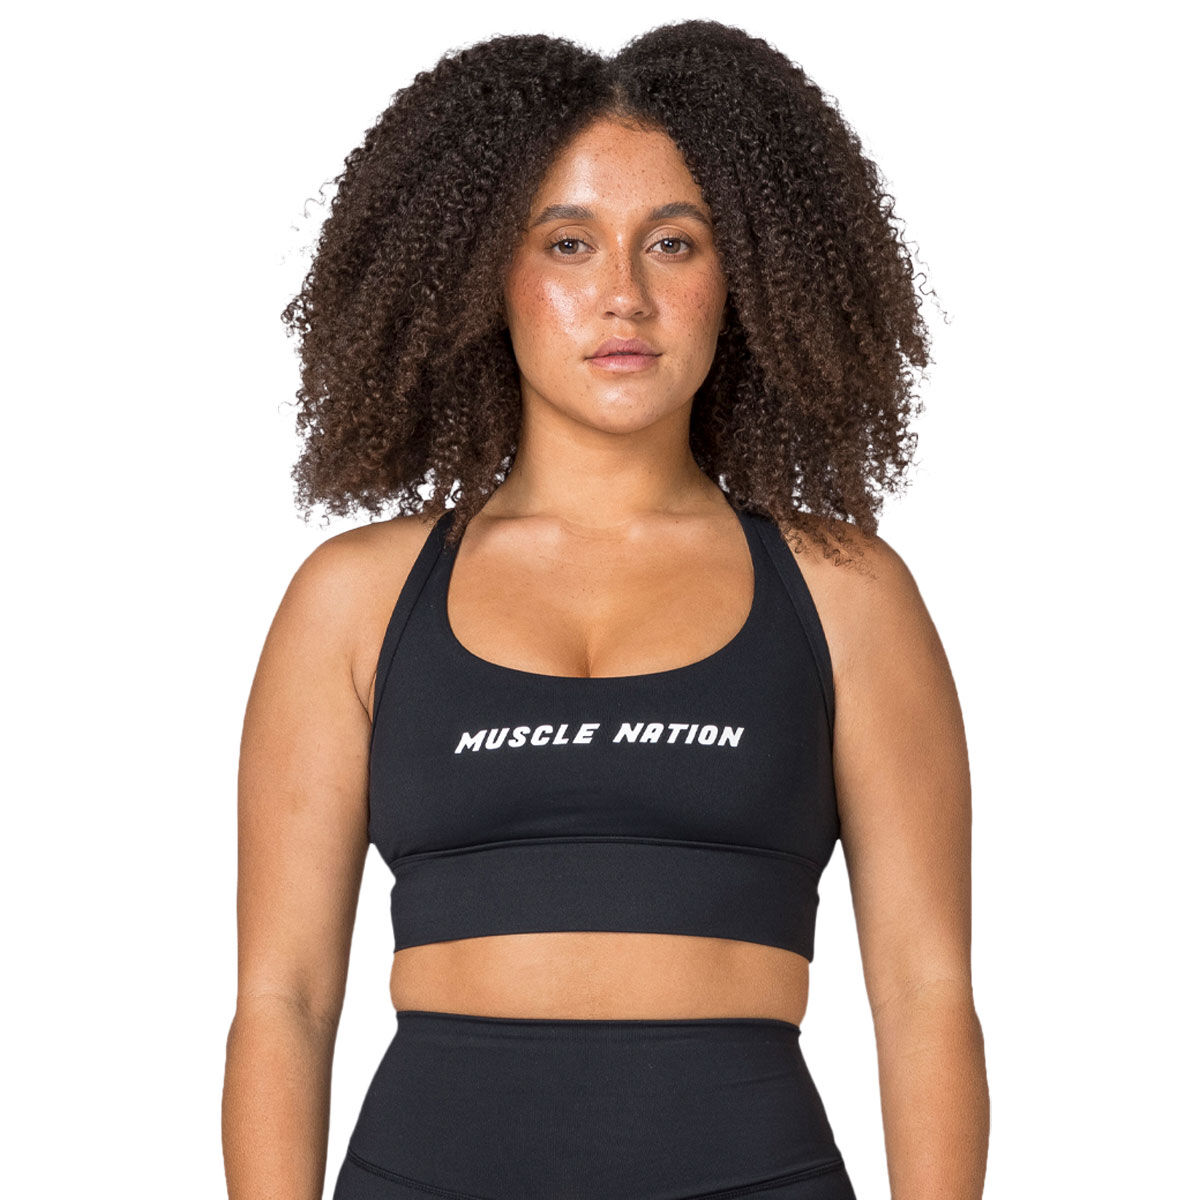 Musclenation, Intimates & Sleepwear, Nwt Muscle Nation Sports Bra Size Xs